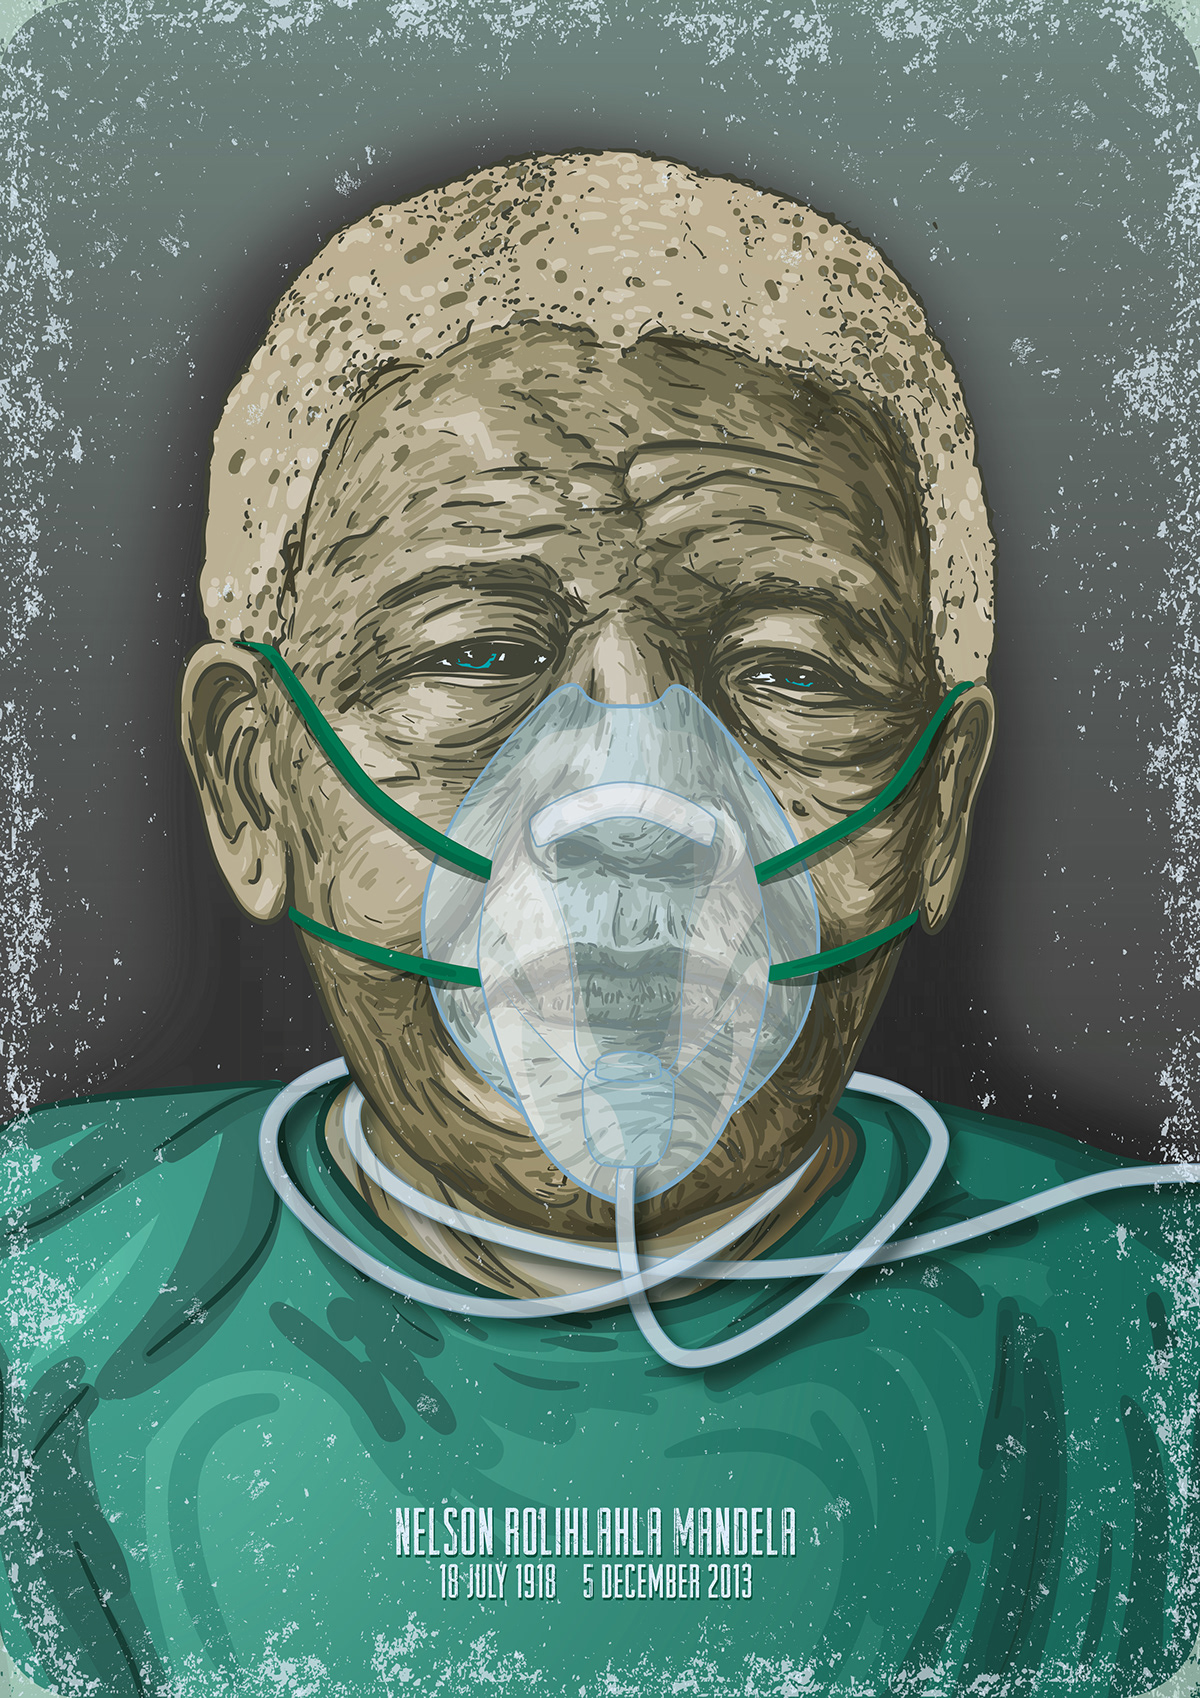 Mandela ijusi oxygen mask life support Hospital Green Wise Eyes freedom death